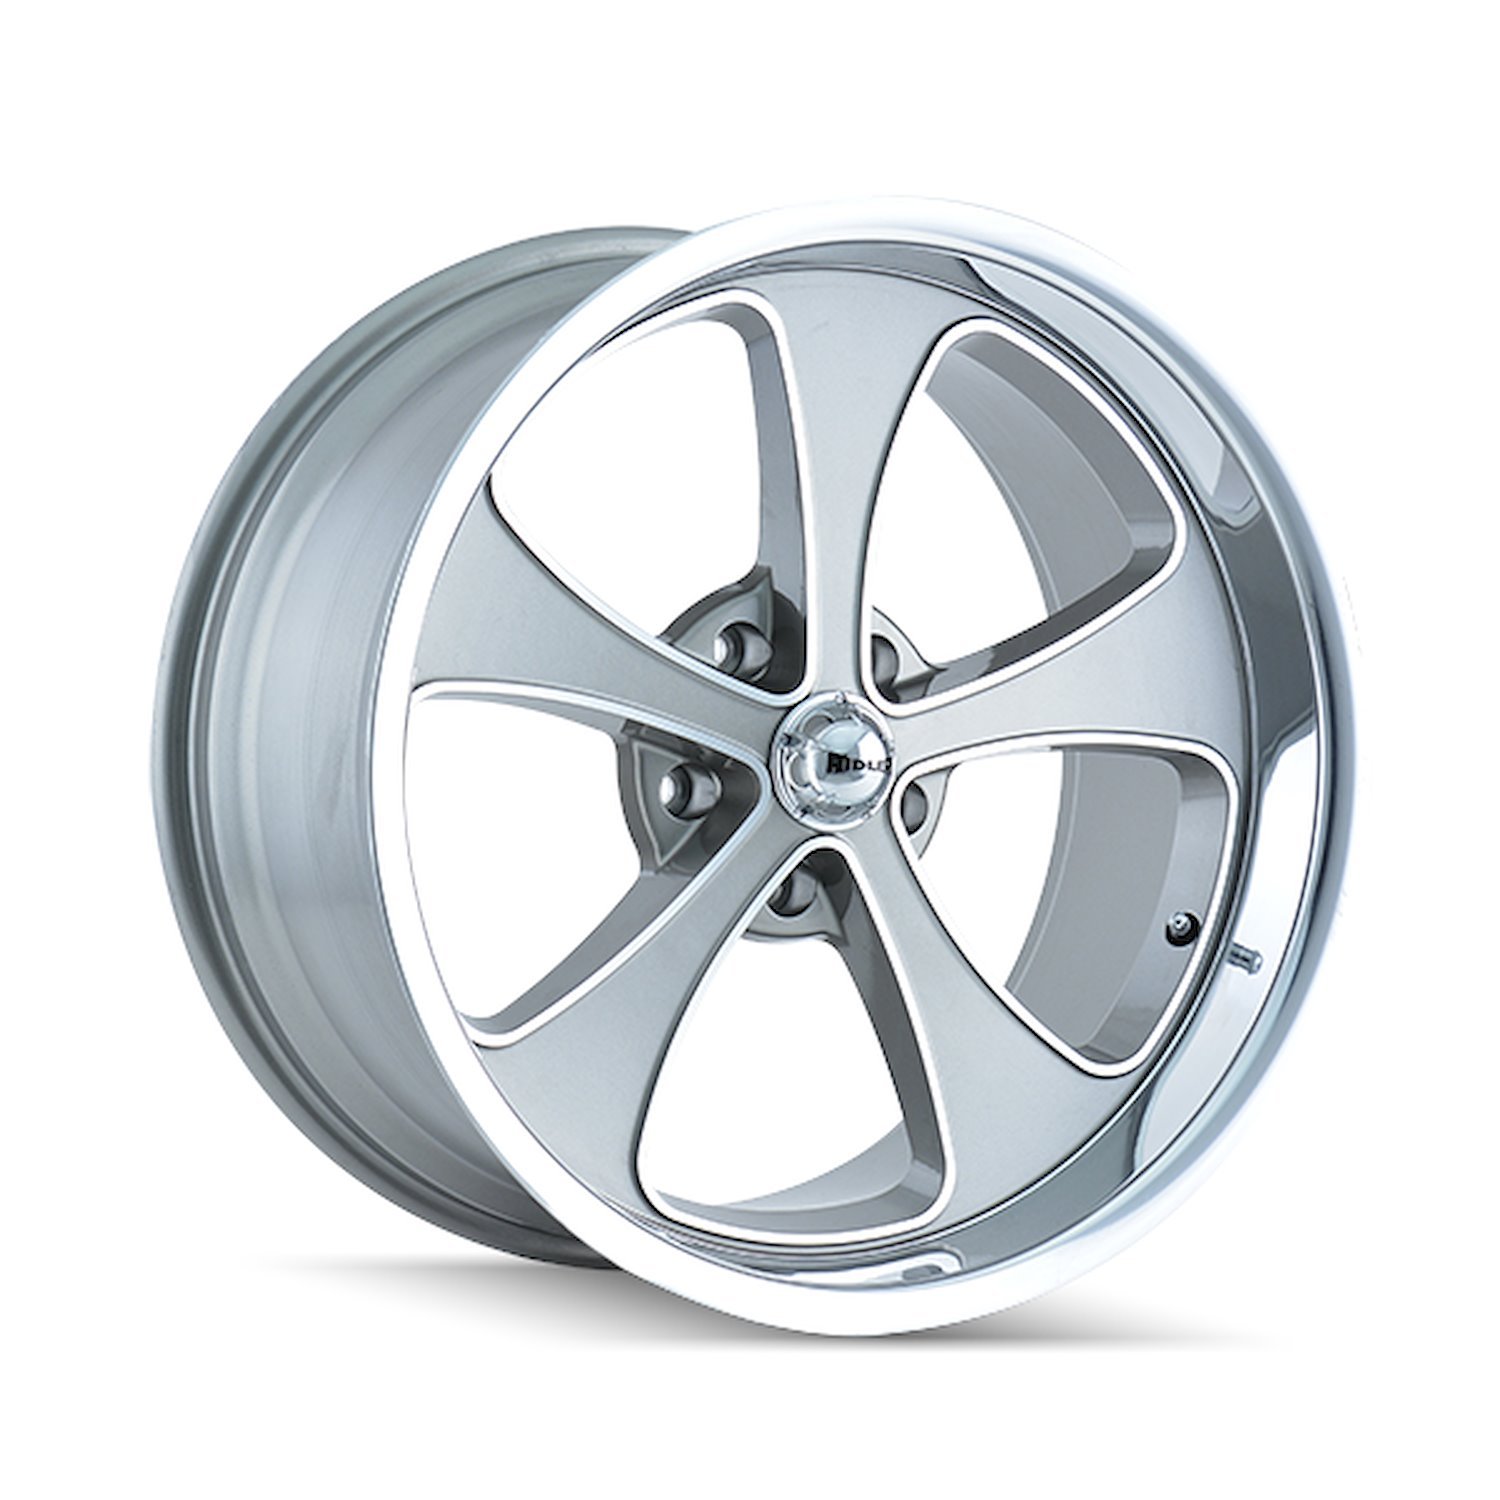 645-8961GP 645-Series Wheel [Size: 18" x 9.50"] Gloss Grey Machined/Polished Finish